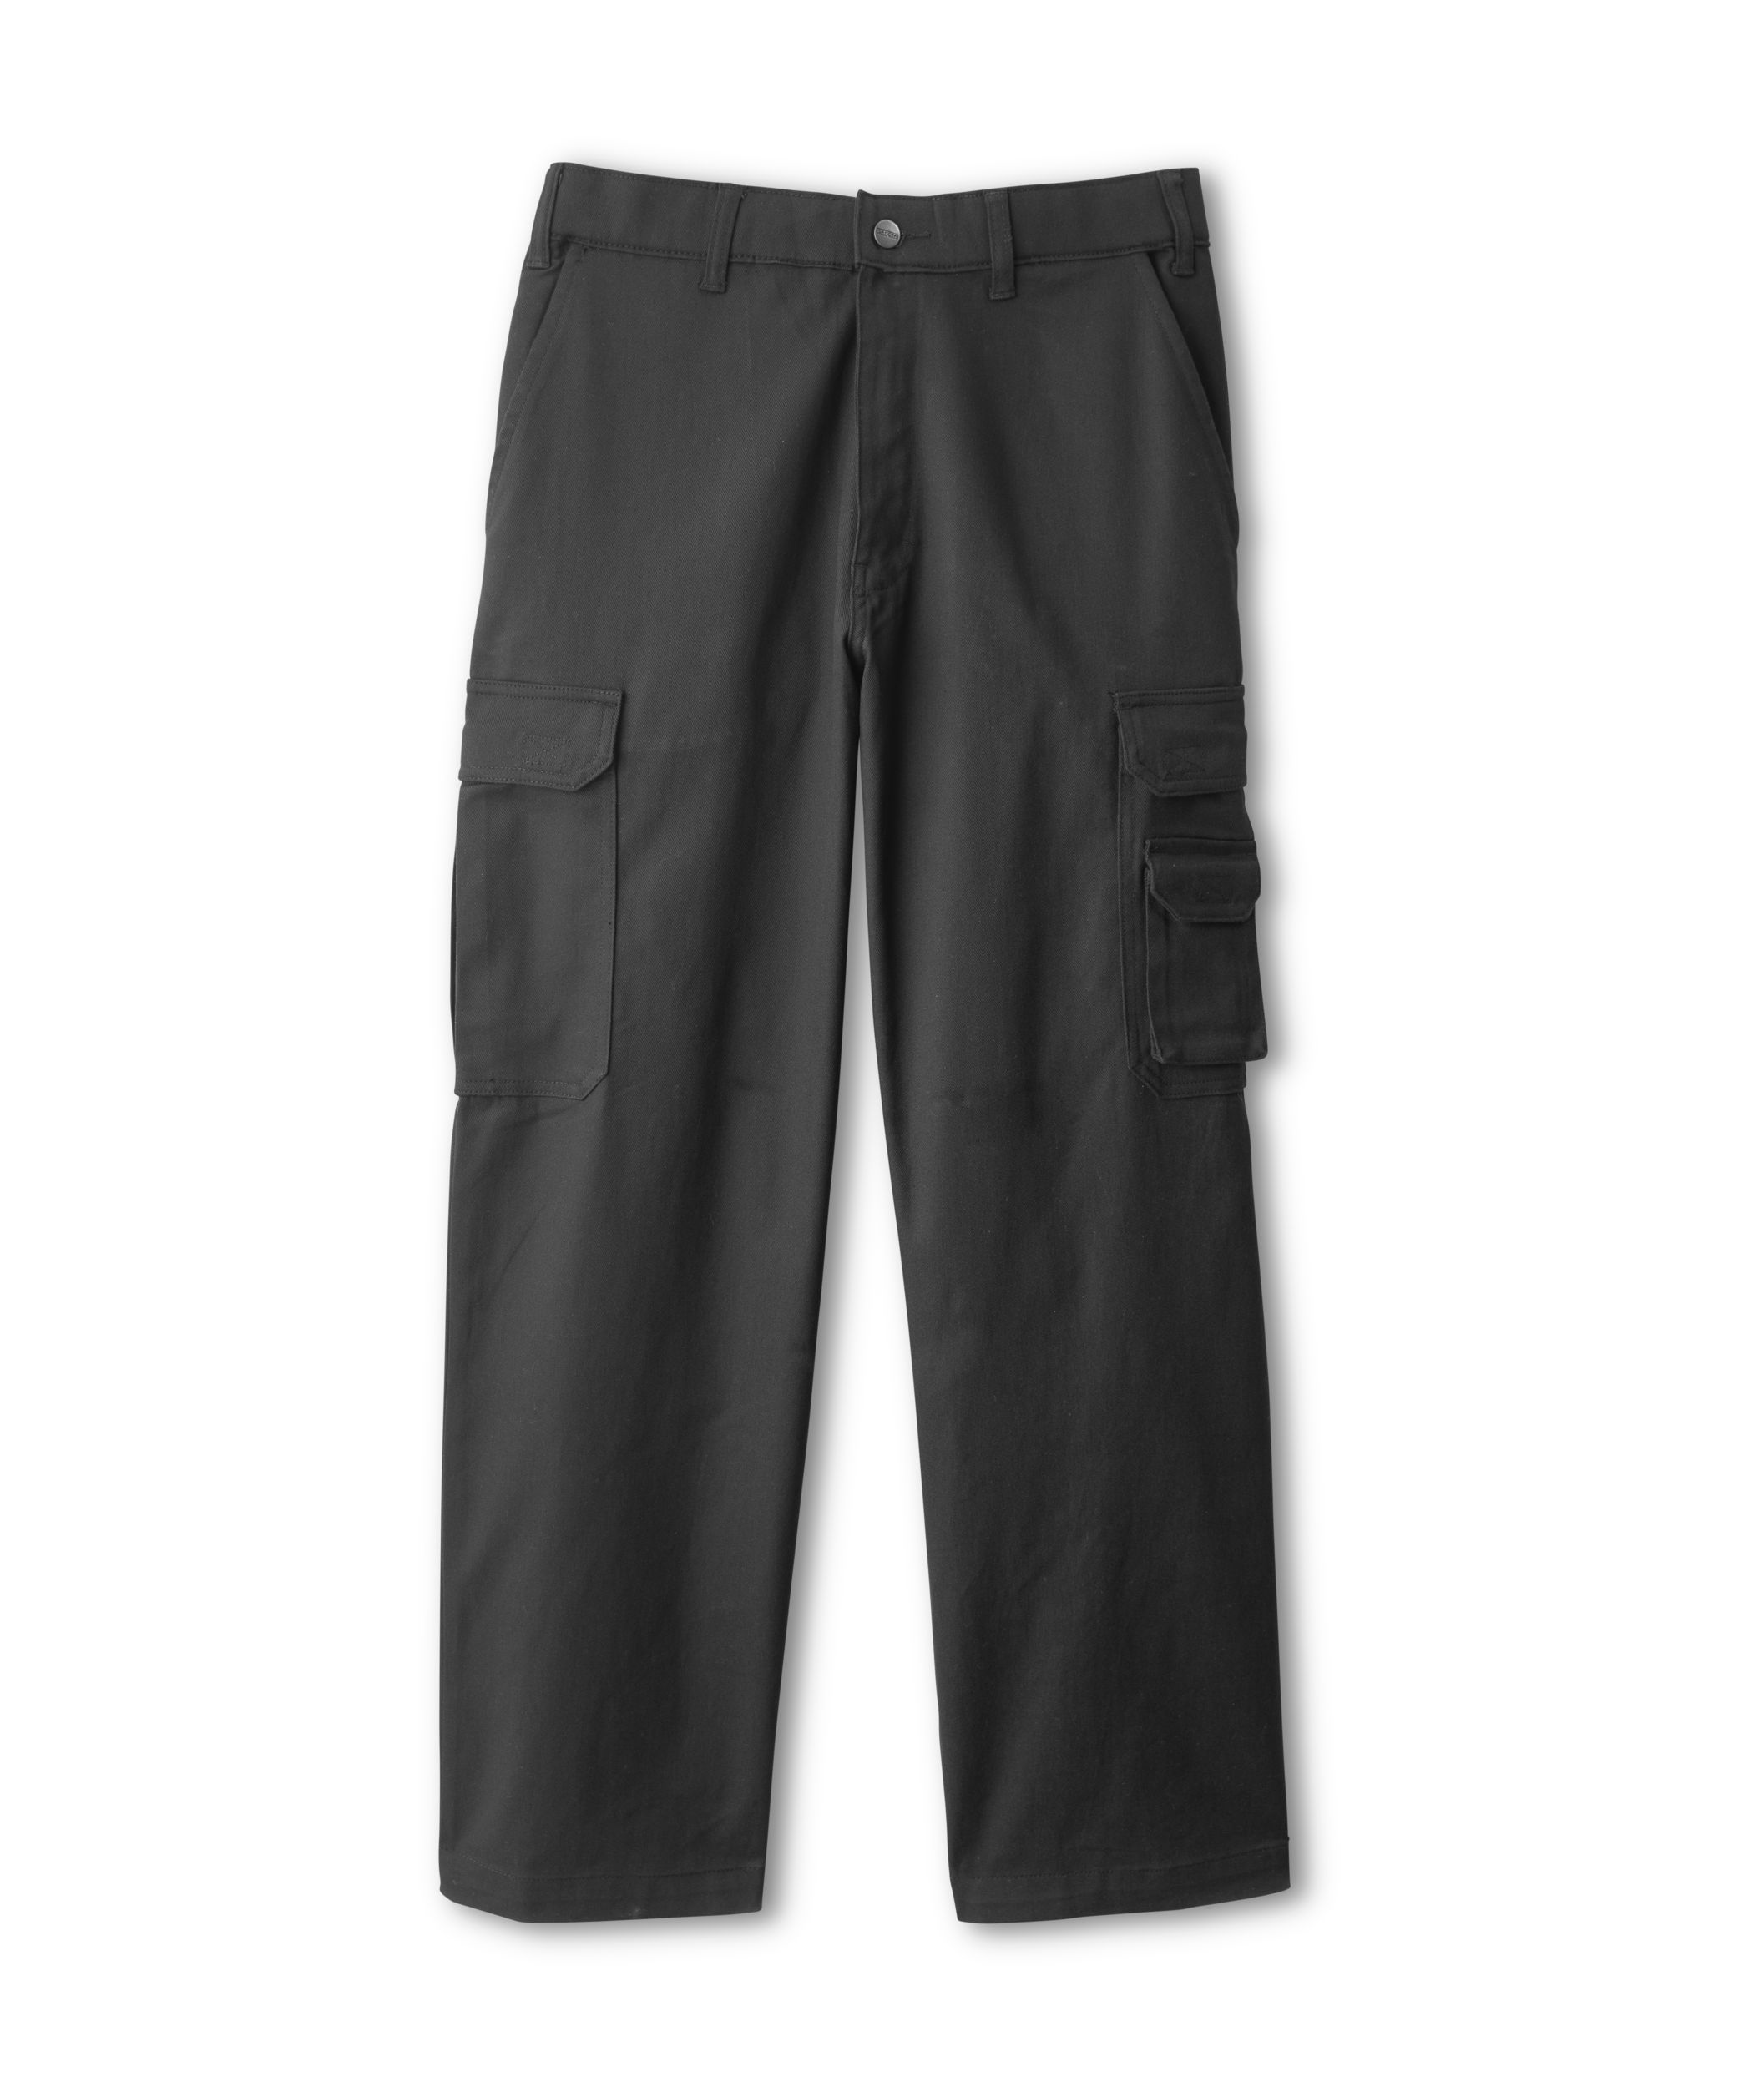 Black cotton twill cargo pants, multi-pocket, slim fit, Gado Takoda